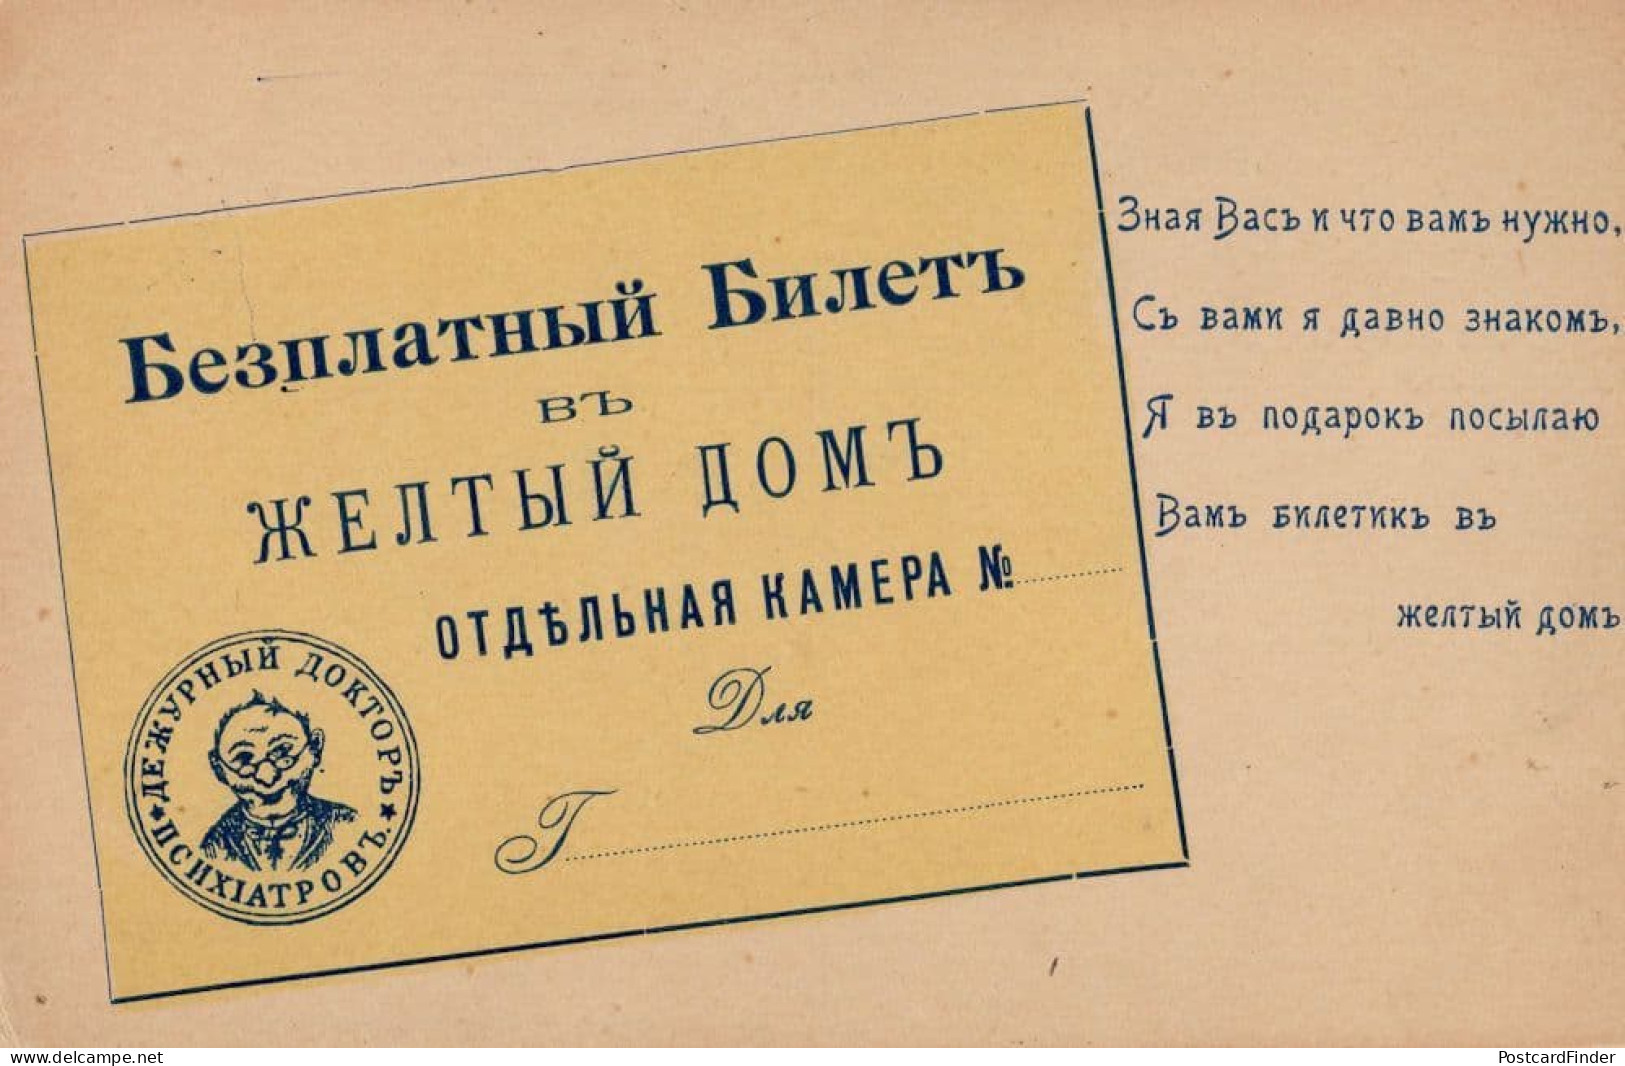 Russian Antique Soviet Business Card Advertising Postcard - Publicité